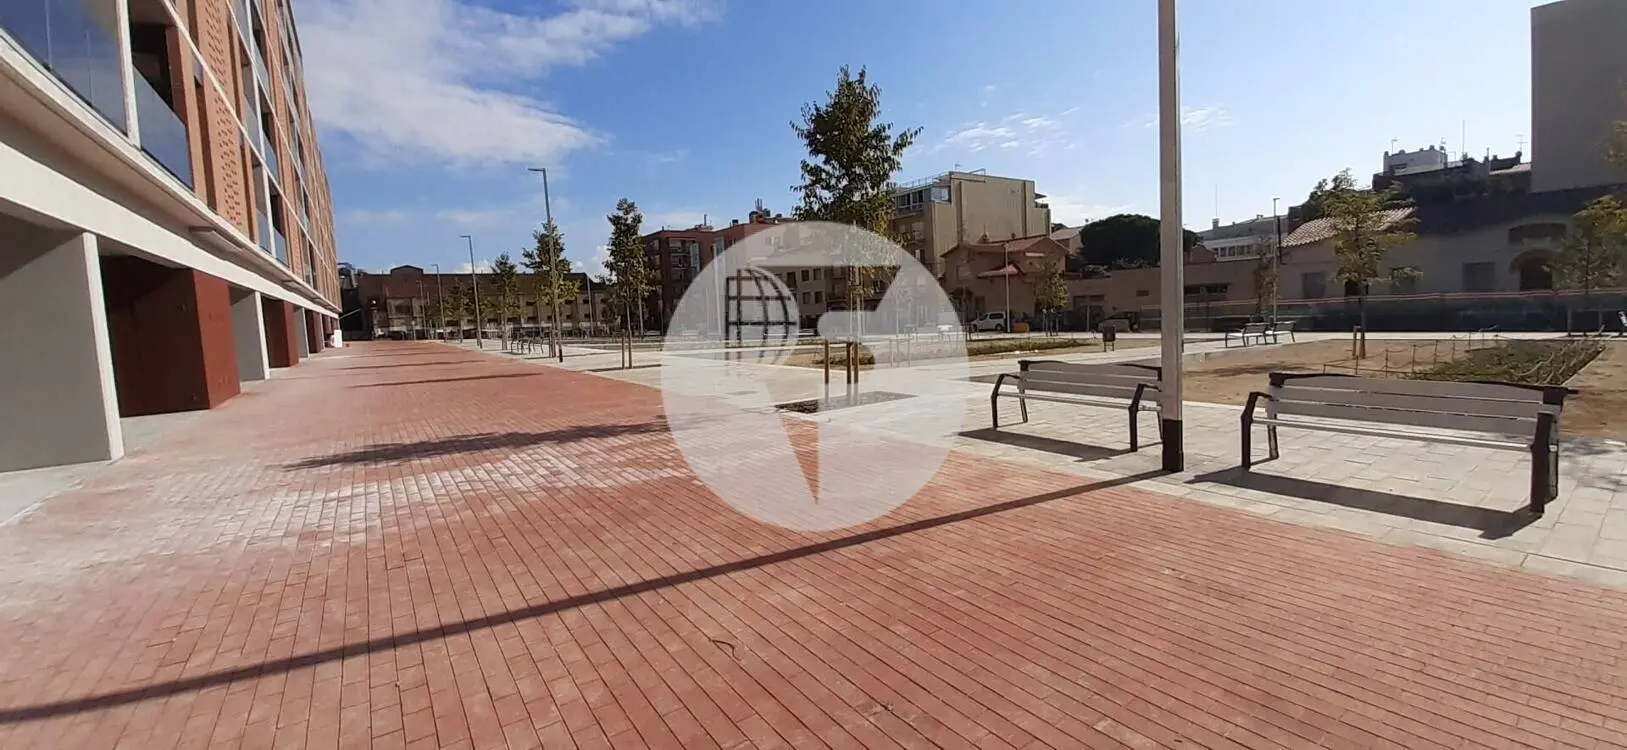 Local comercial de Obra Nueva en Sabadell IE-220758 2